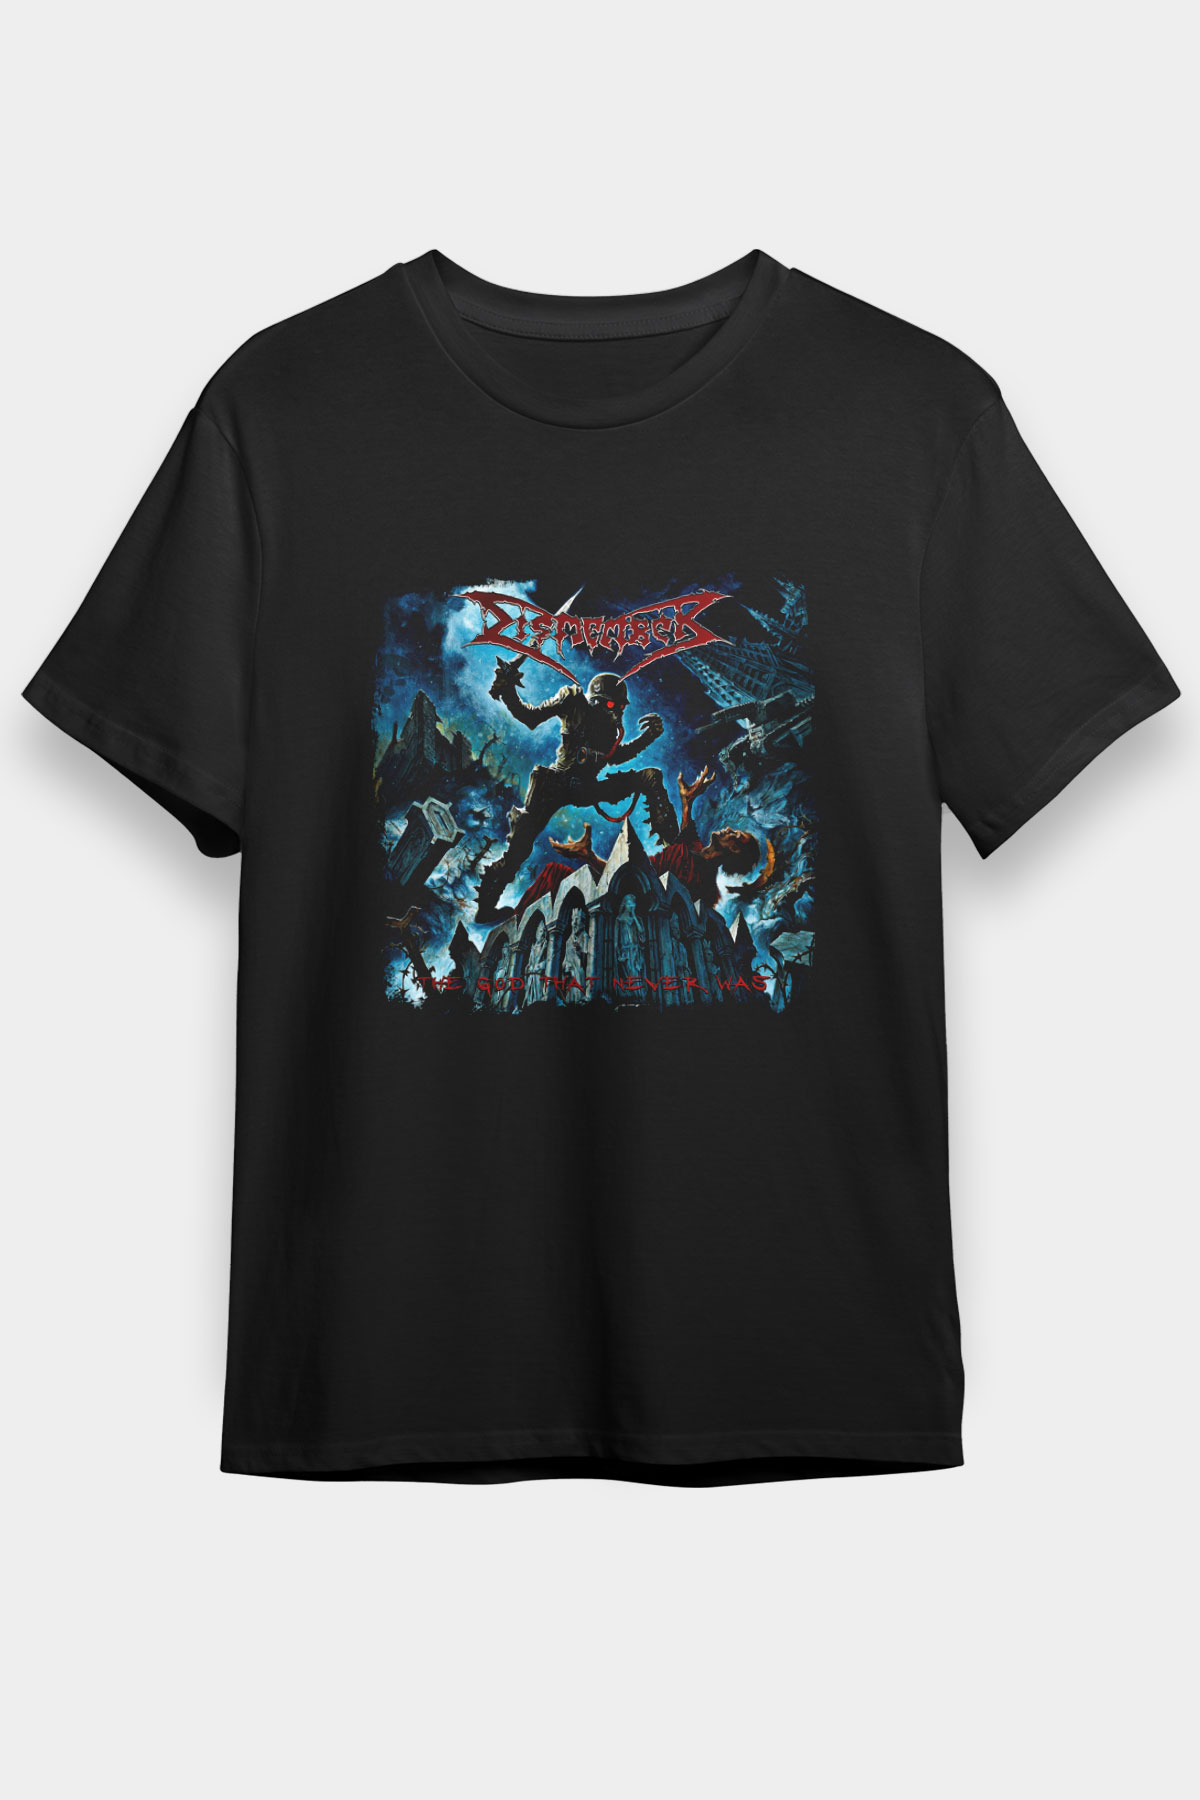 Dismember T shirt, Music Band ,Unisex Tshirt 06/